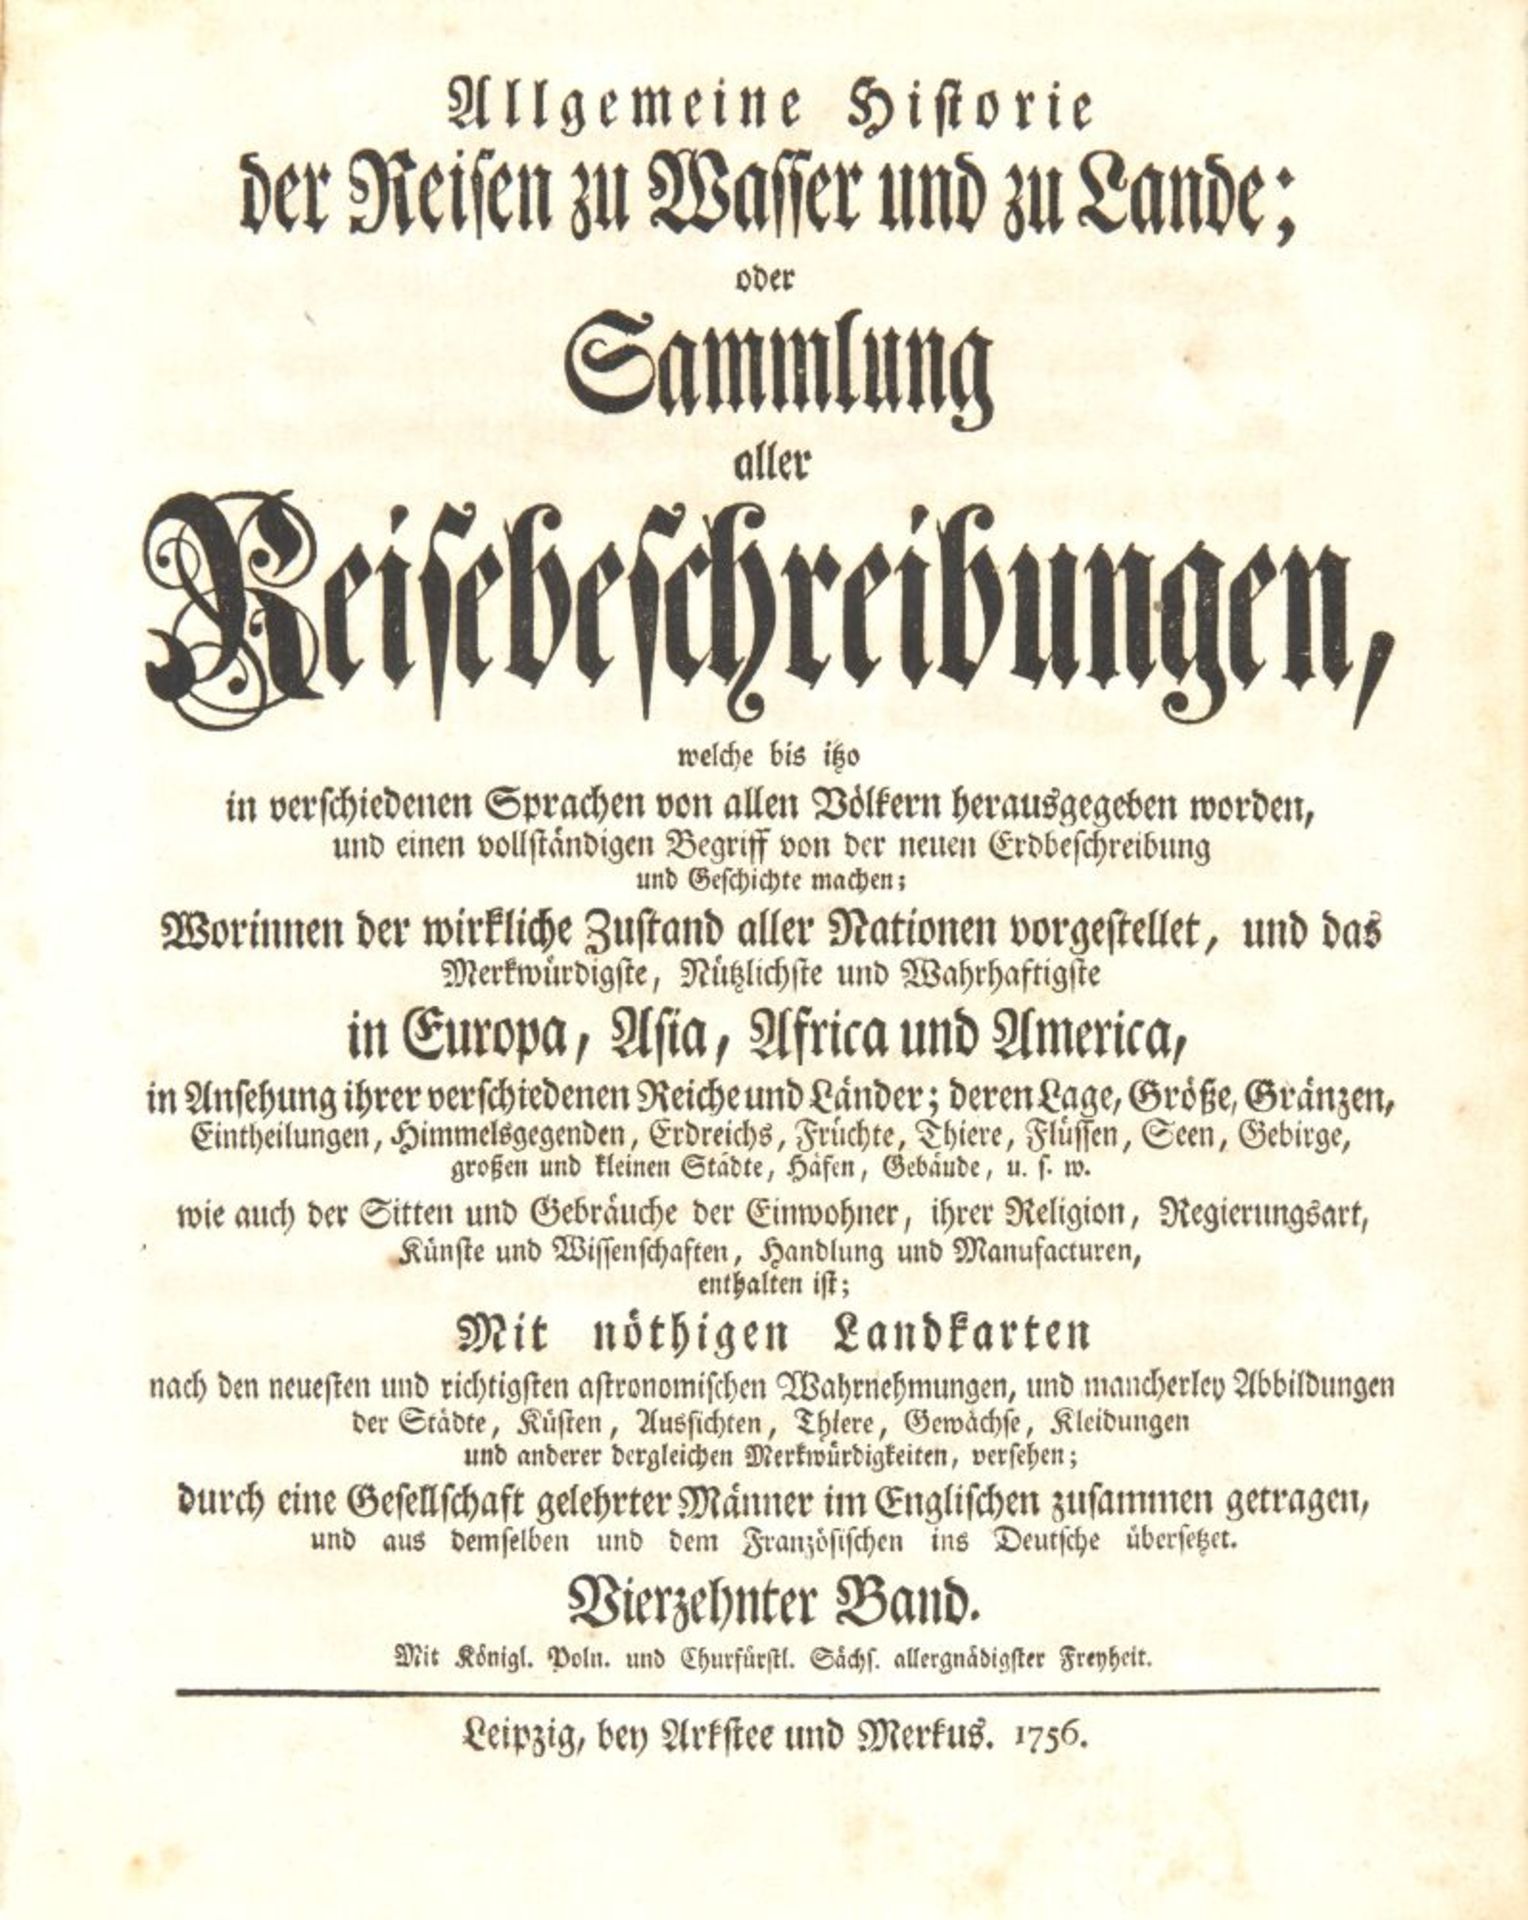 J. J. Schwabe, Reisebeschreibungen. Bd. XIV. Lpz 1756. - Image 2 of 3